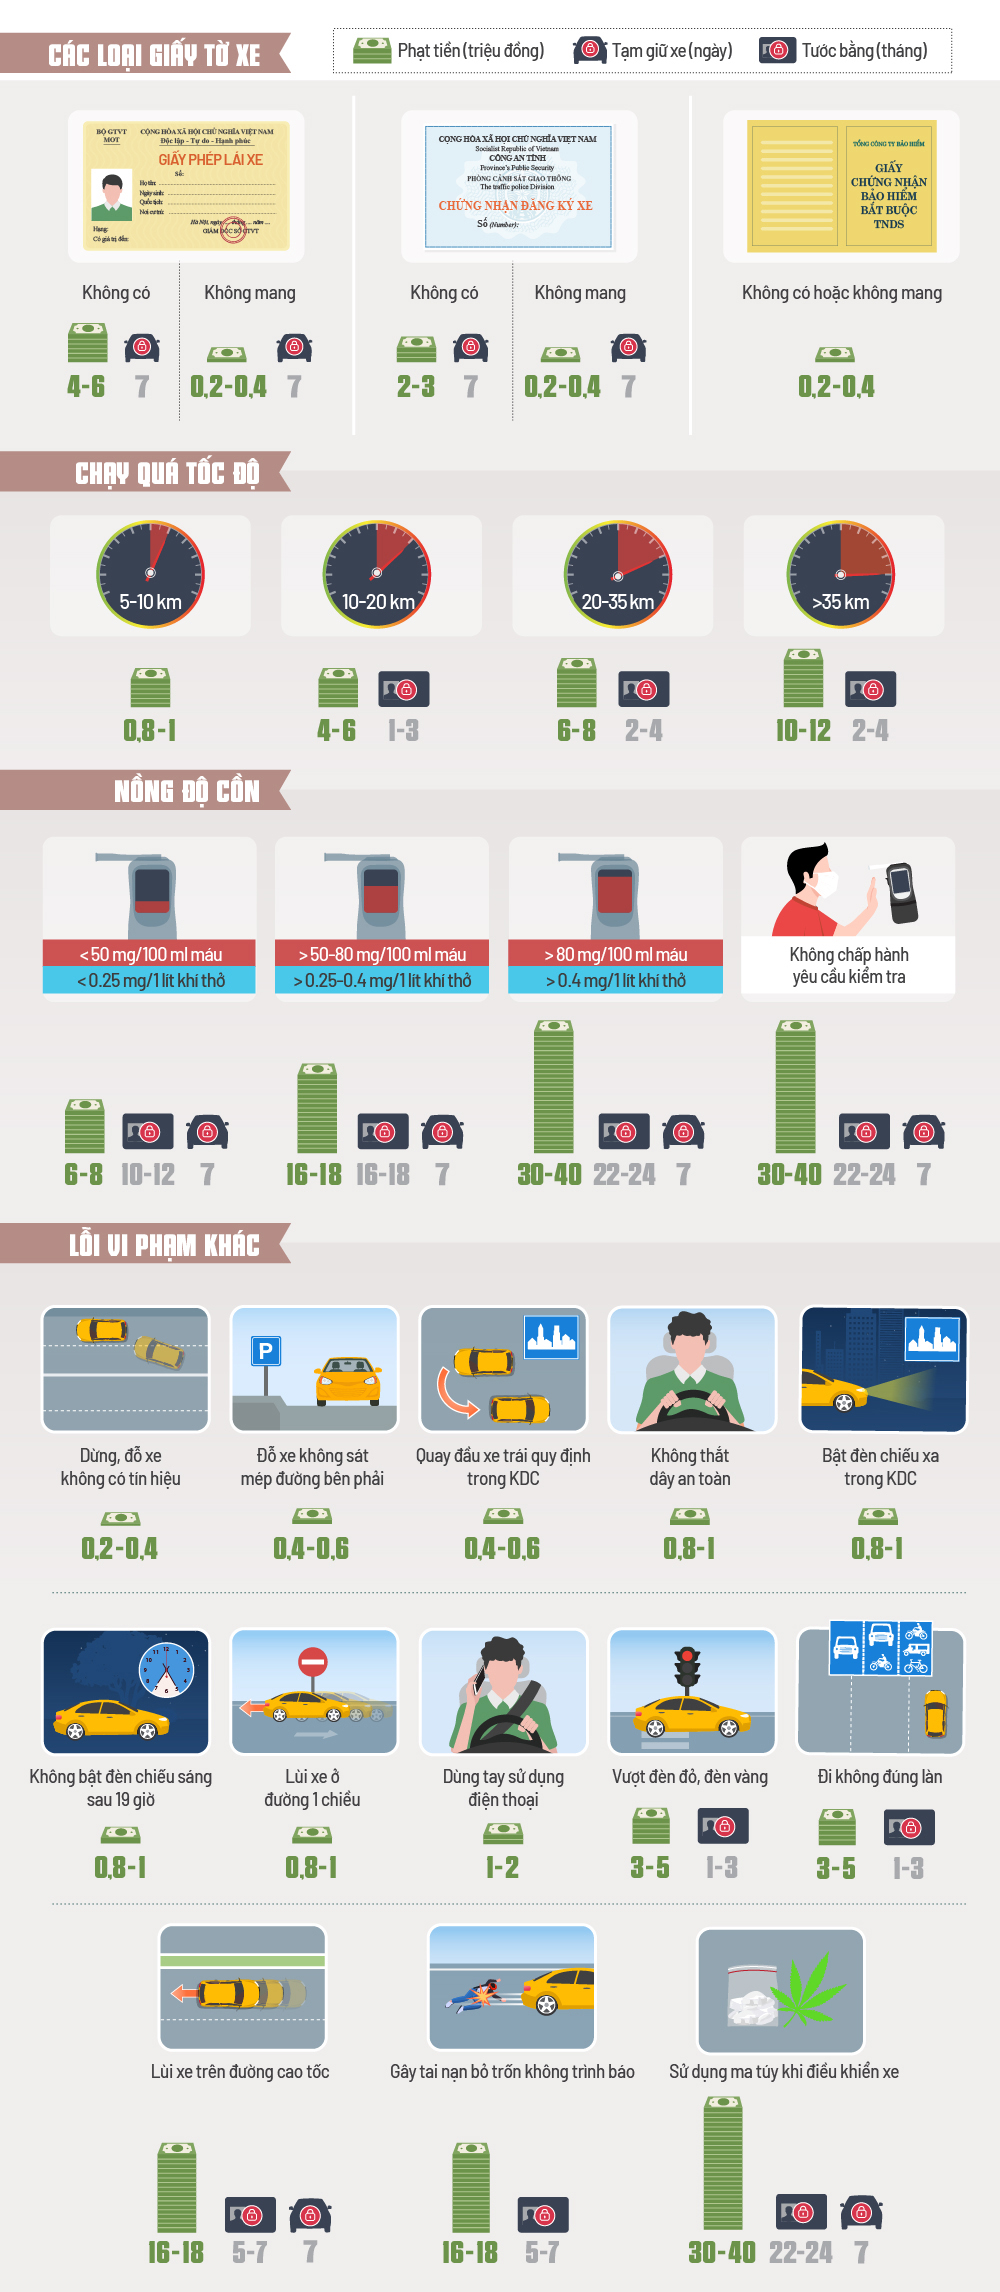 Mức phạt cho các lỗi giao thông hay gặp tại Việt Nam